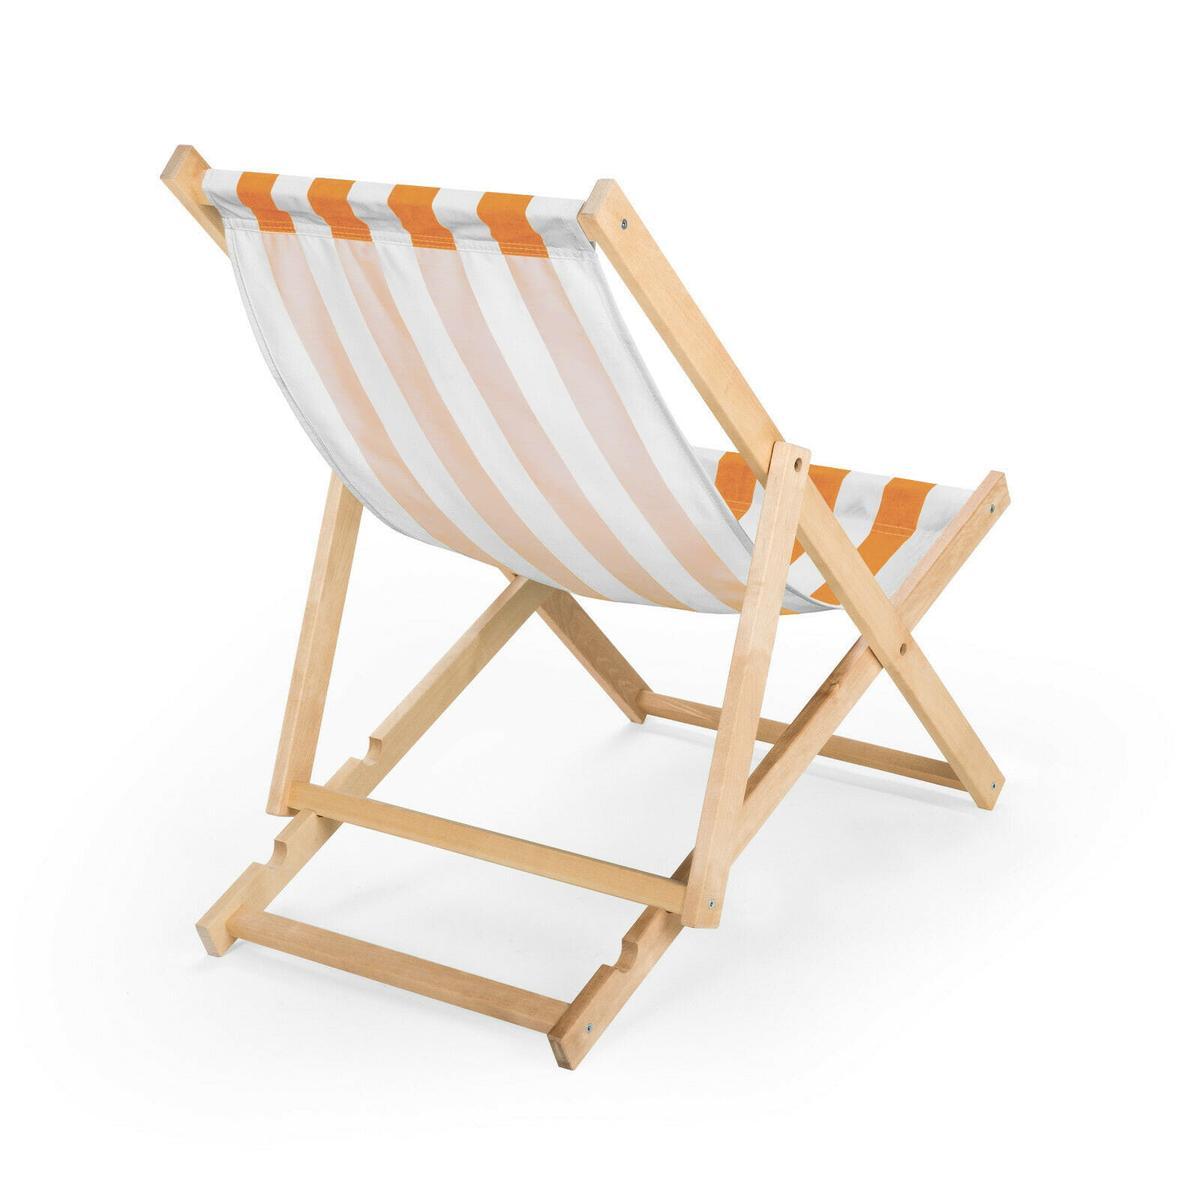 Leżak drewniany 47x112 cm ogrodowy plażowy do ogrodu pasy biało-pomarańczowe nr. 2